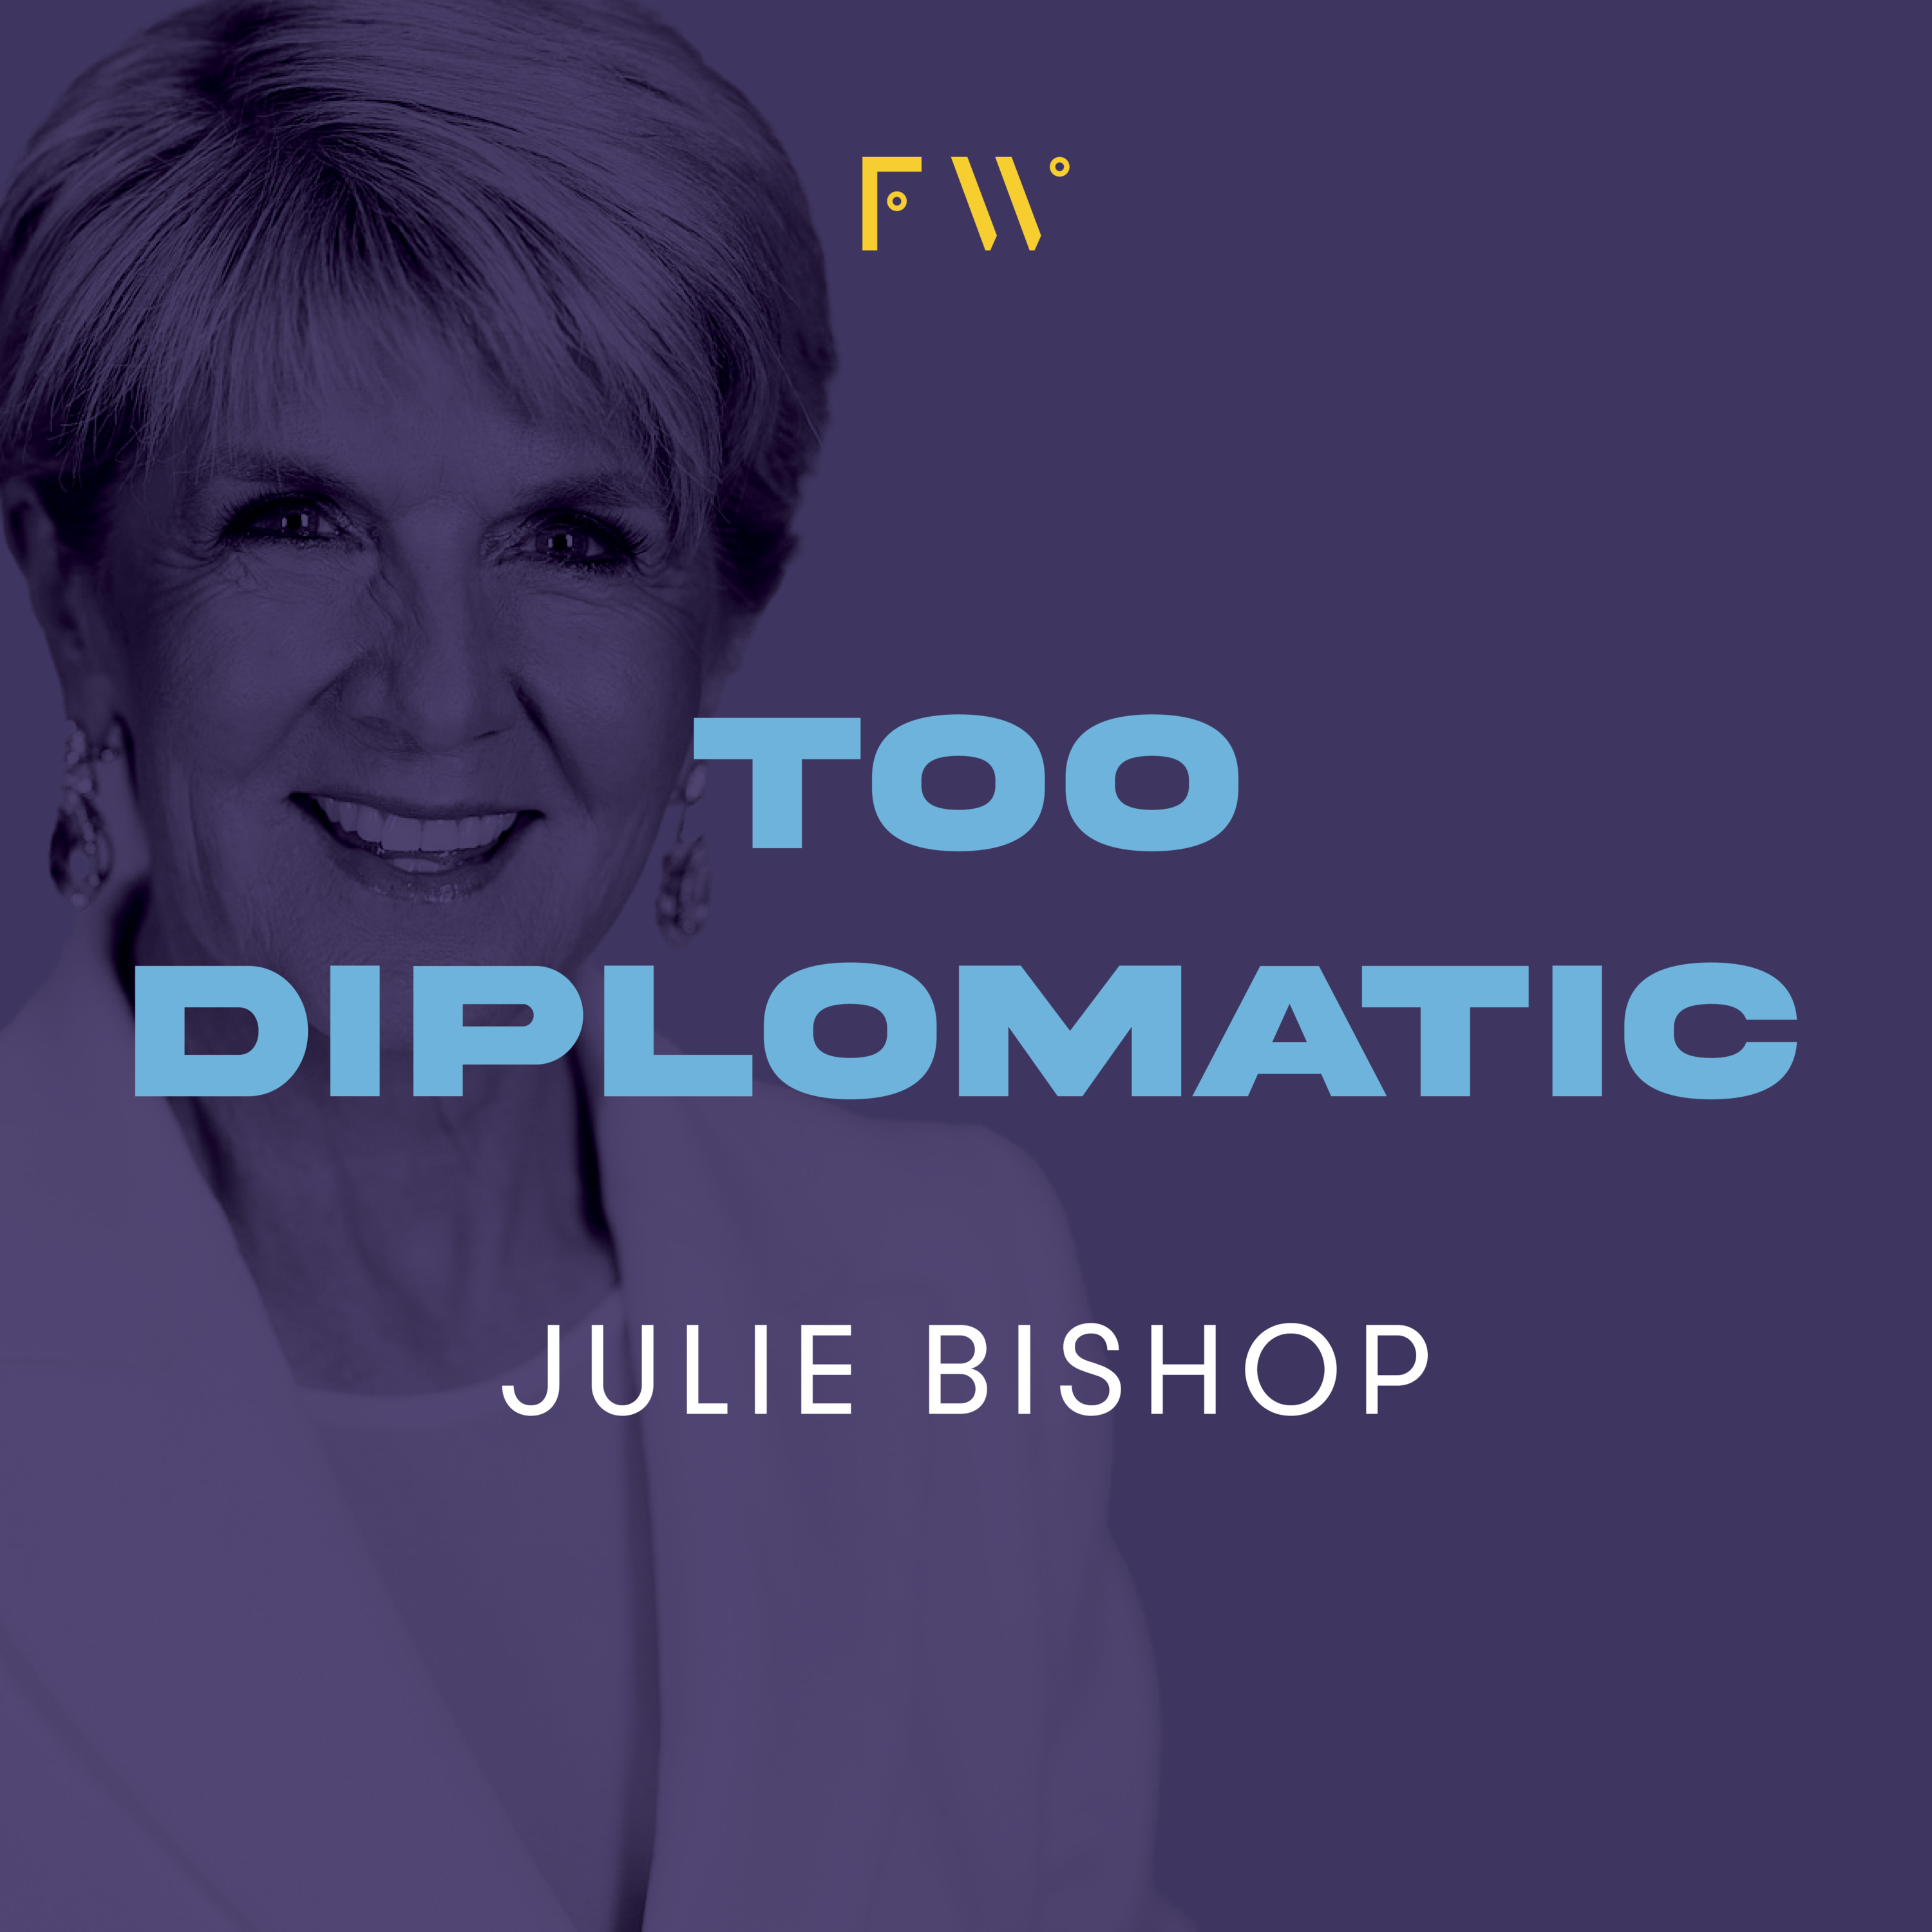 4. Julie Bishop was "too diplomatic"